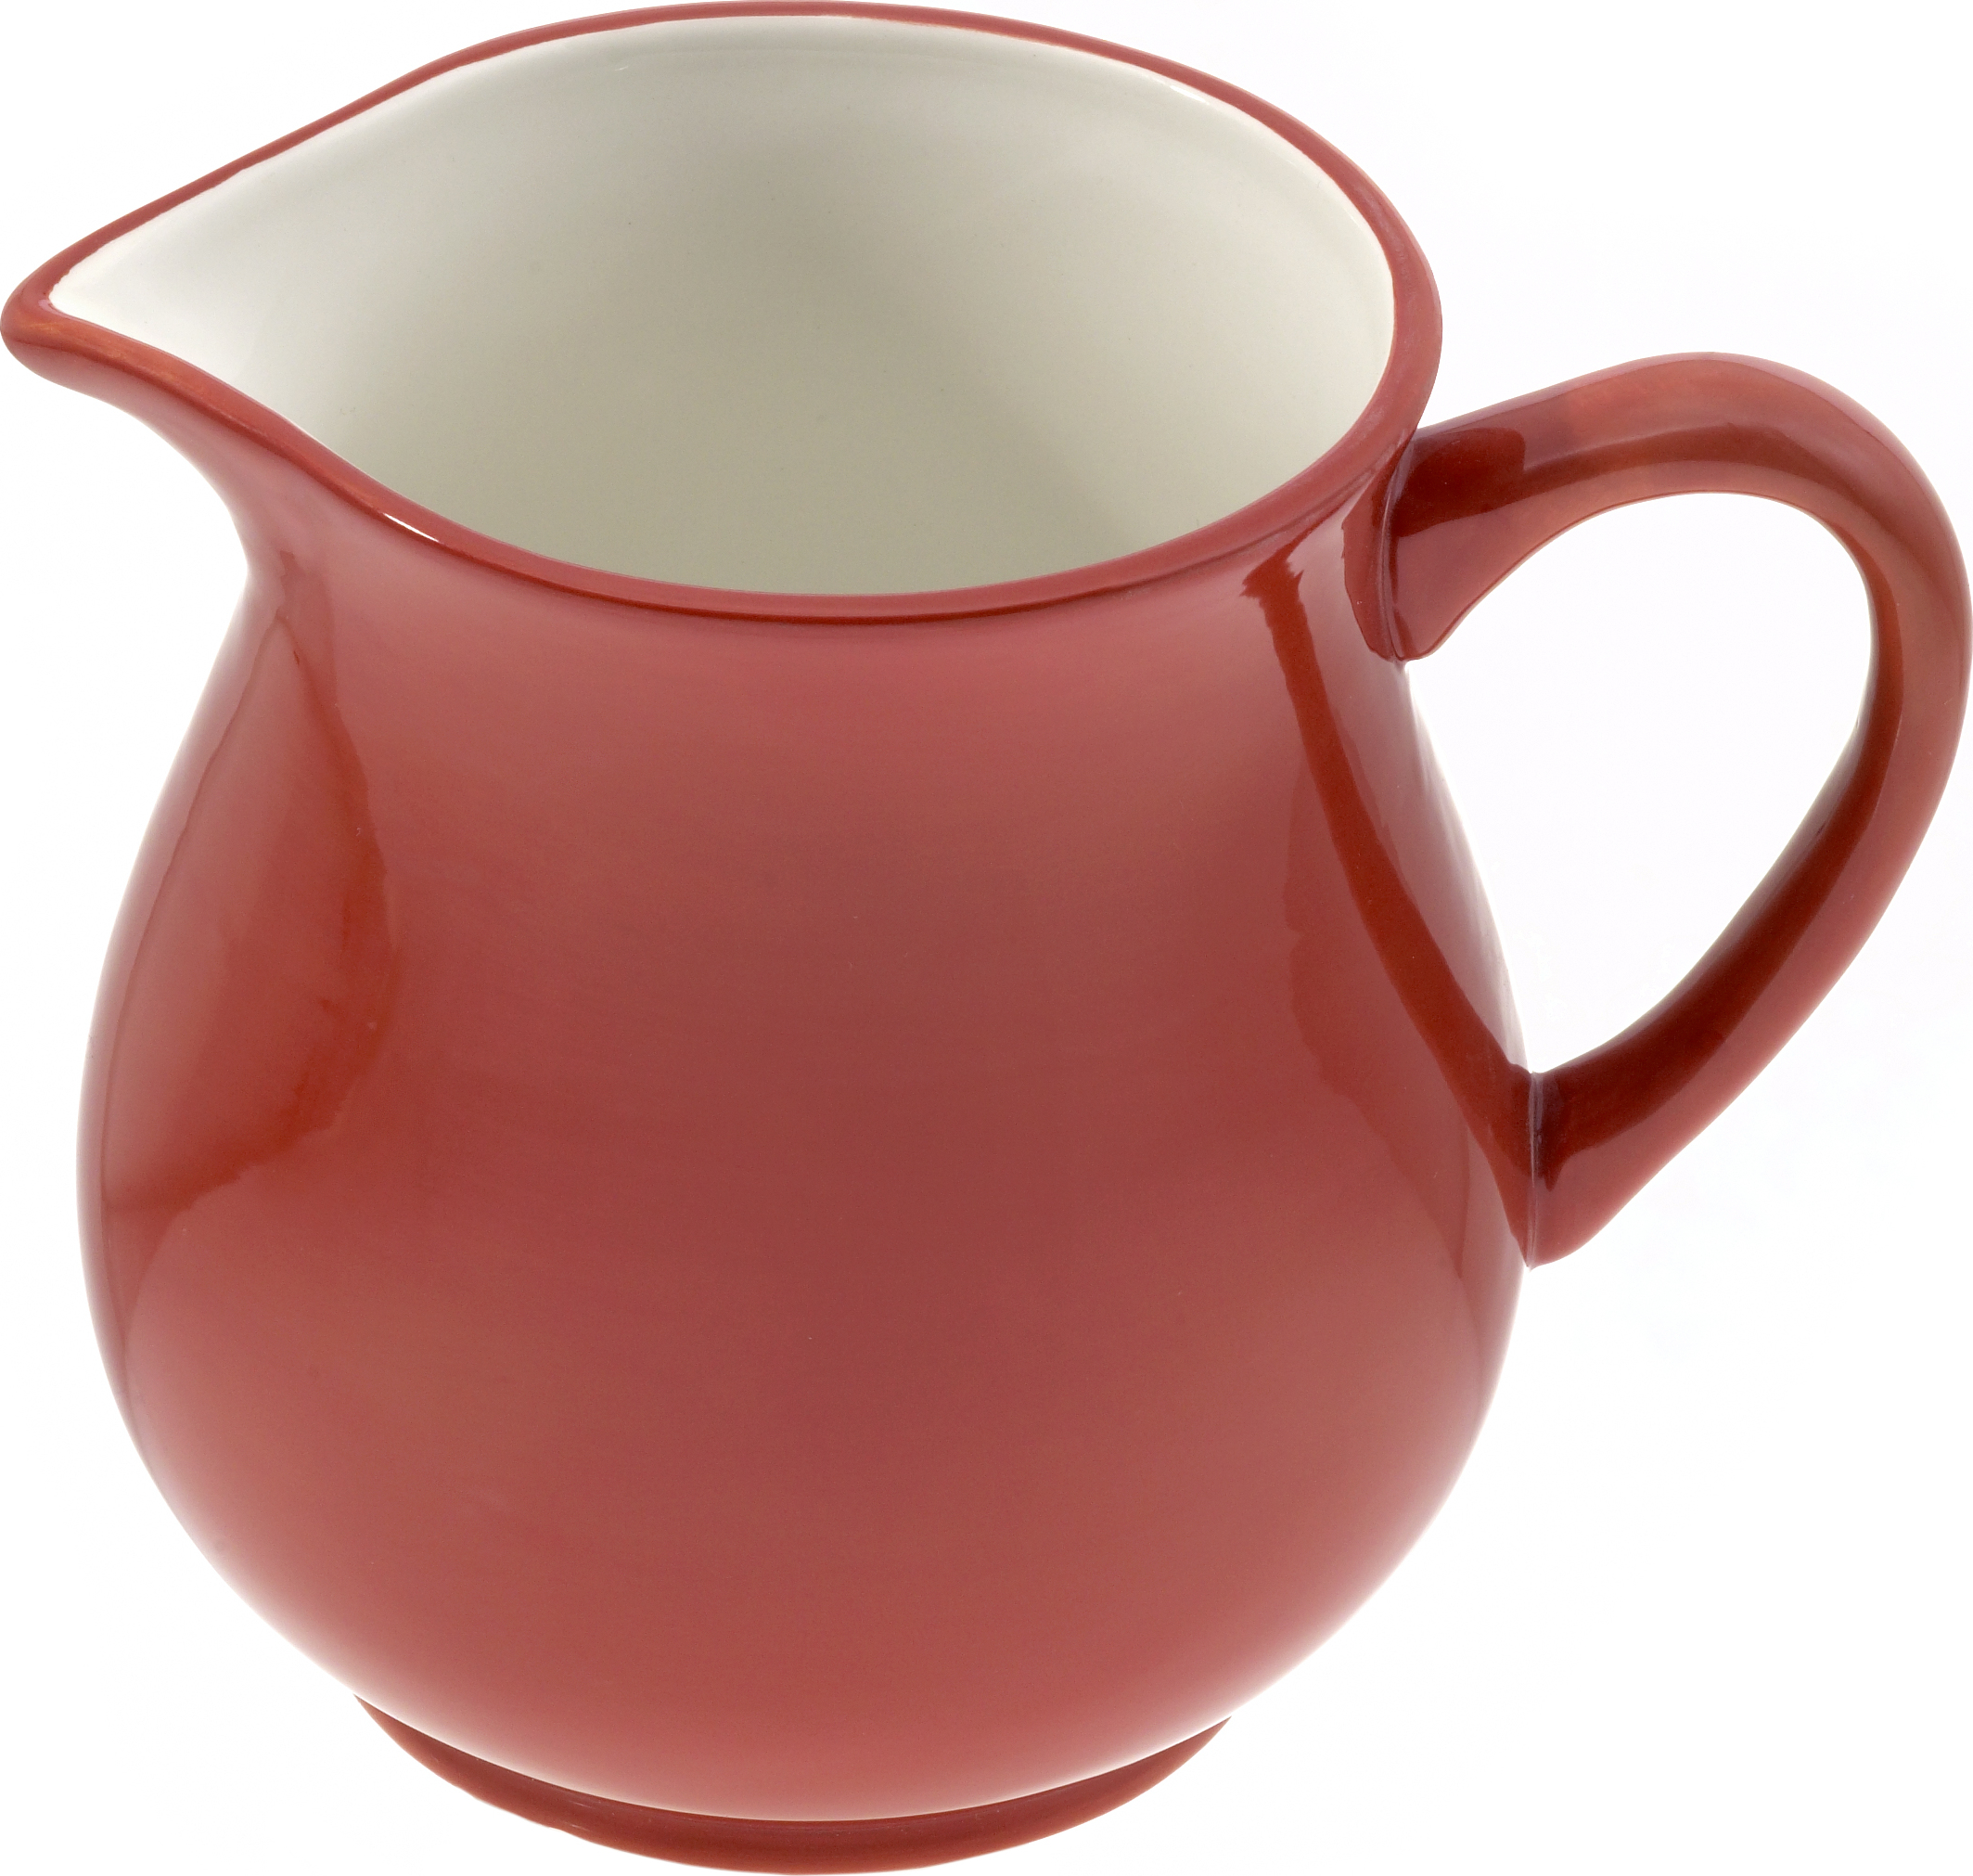 Keramik Krug 0,5 ltr. "rot/weiß" - Magu 112 911